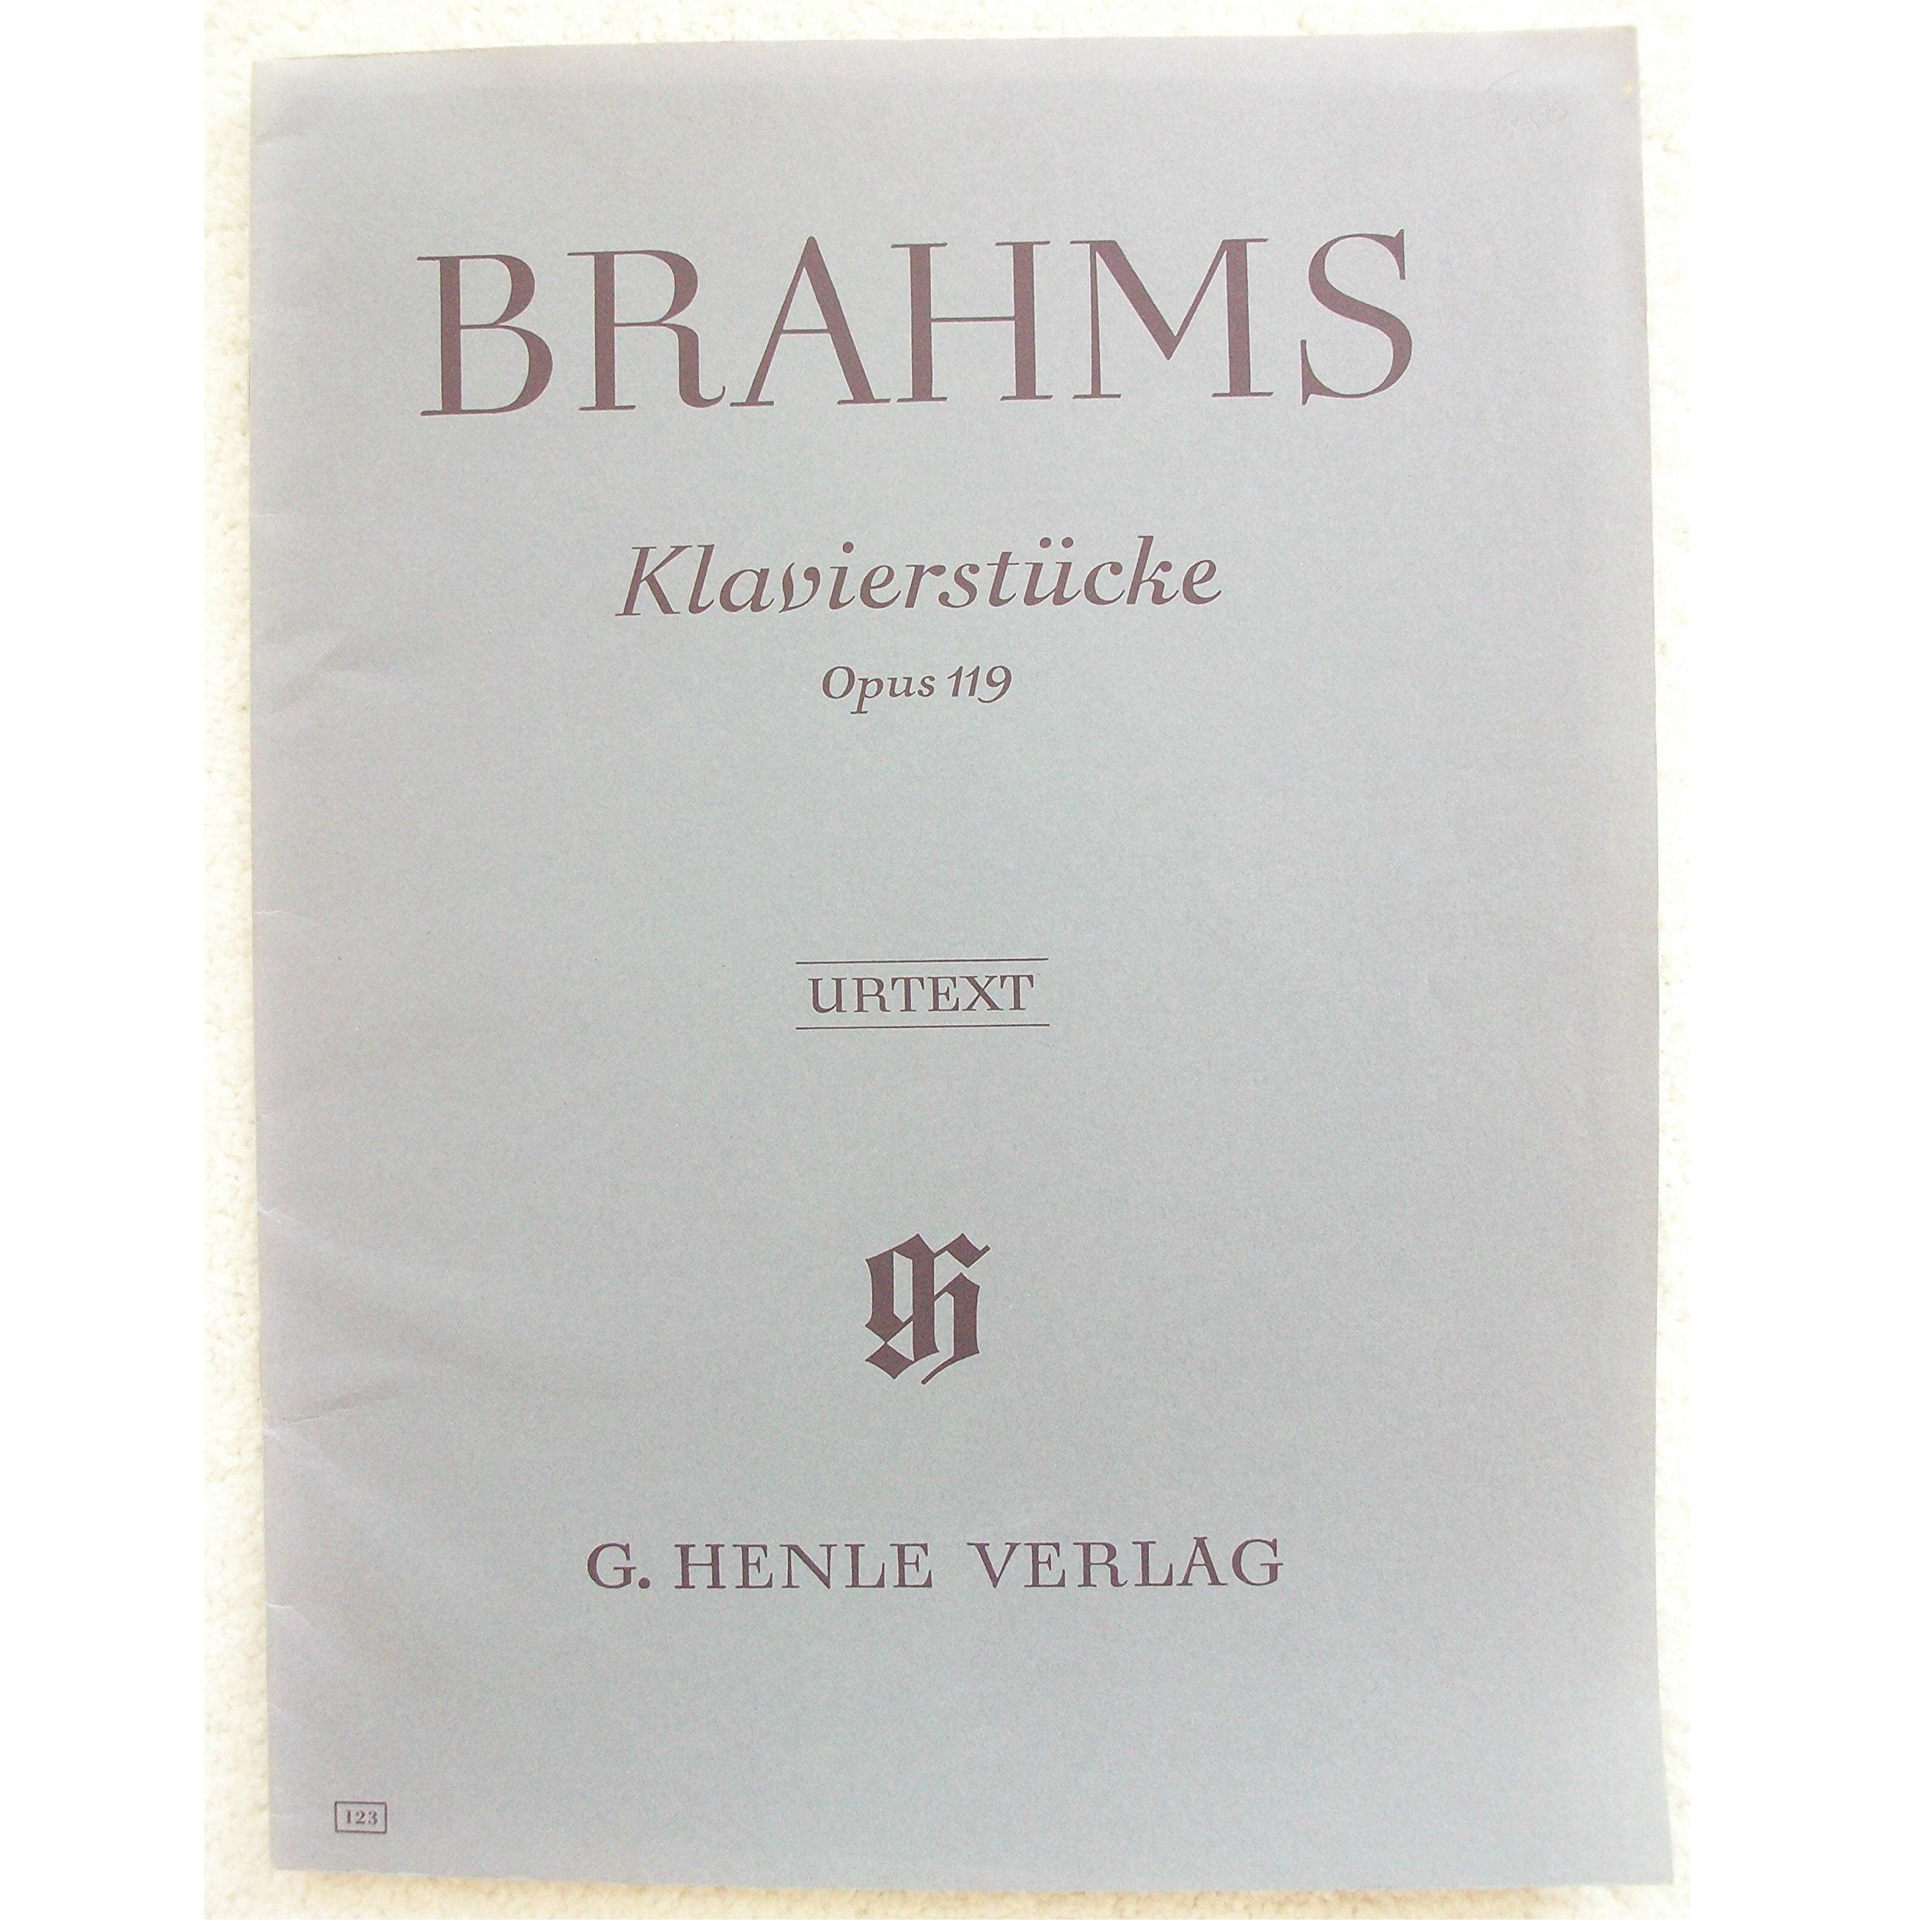 Brahms Klavierstiicke Opus 119 Urtext - Verlag